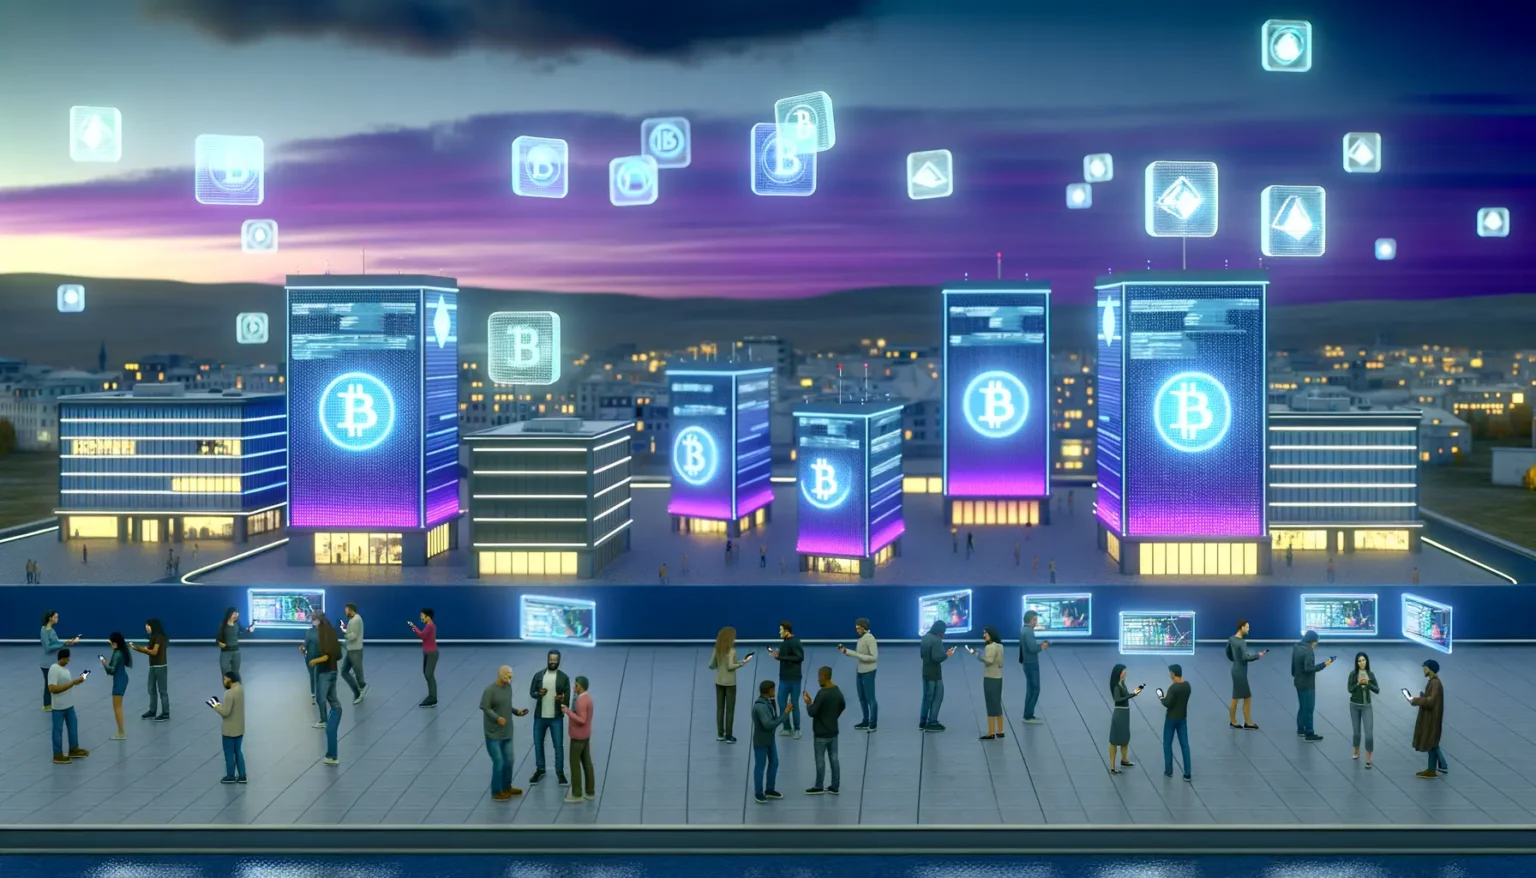 Eine futuristische Darstellung einer Stadt bei Dämmerung mit mehreren Gebäuden beleuchtet durch blaues Licht mit großen Symbolen für verschiedene Kryptowährungen wie Bitcoin und Ethereum, die in der Luft schweben. Menschen stehen auf einer öffentlichen Fläche und interagieren mit Smartphones und Tablets, während digitale Bildschirme Börseninformationen anzeigen.